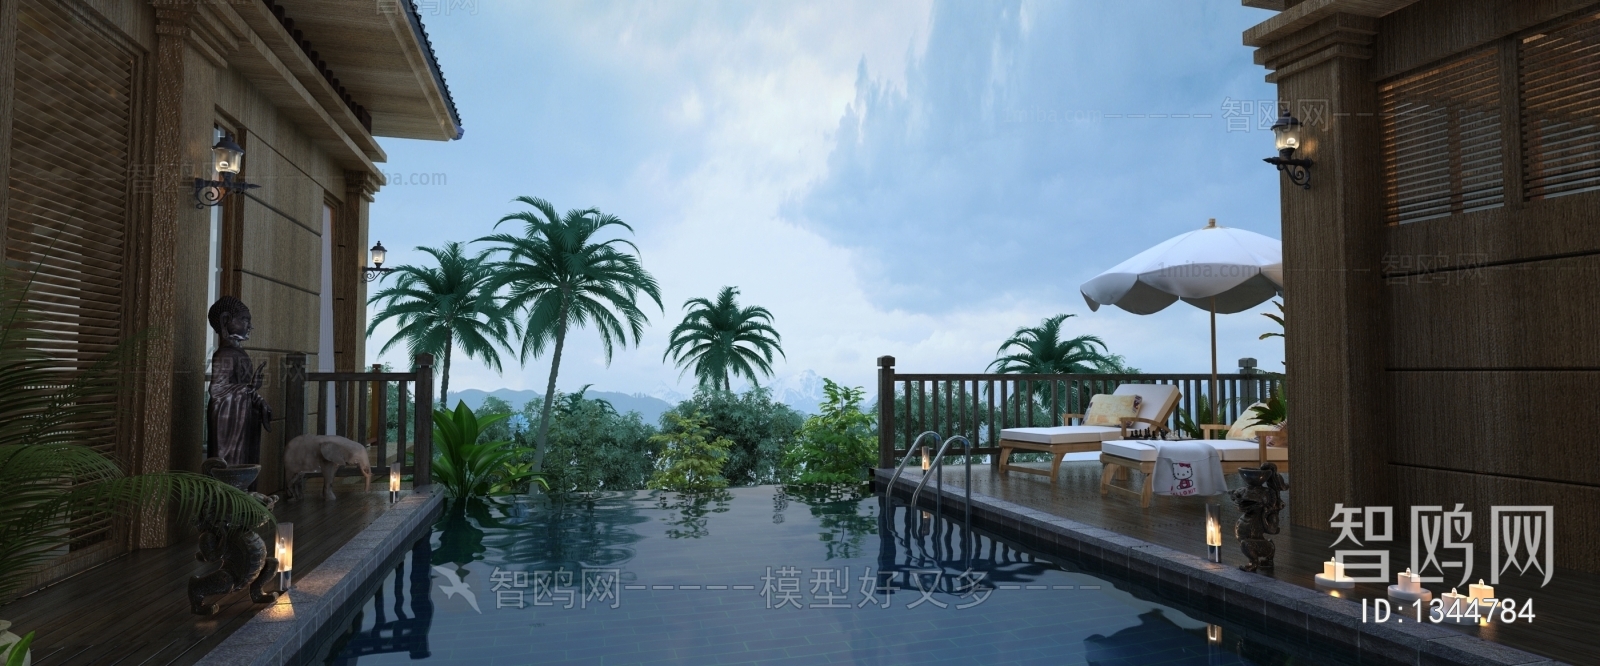 东南亚度假酒店游泳池